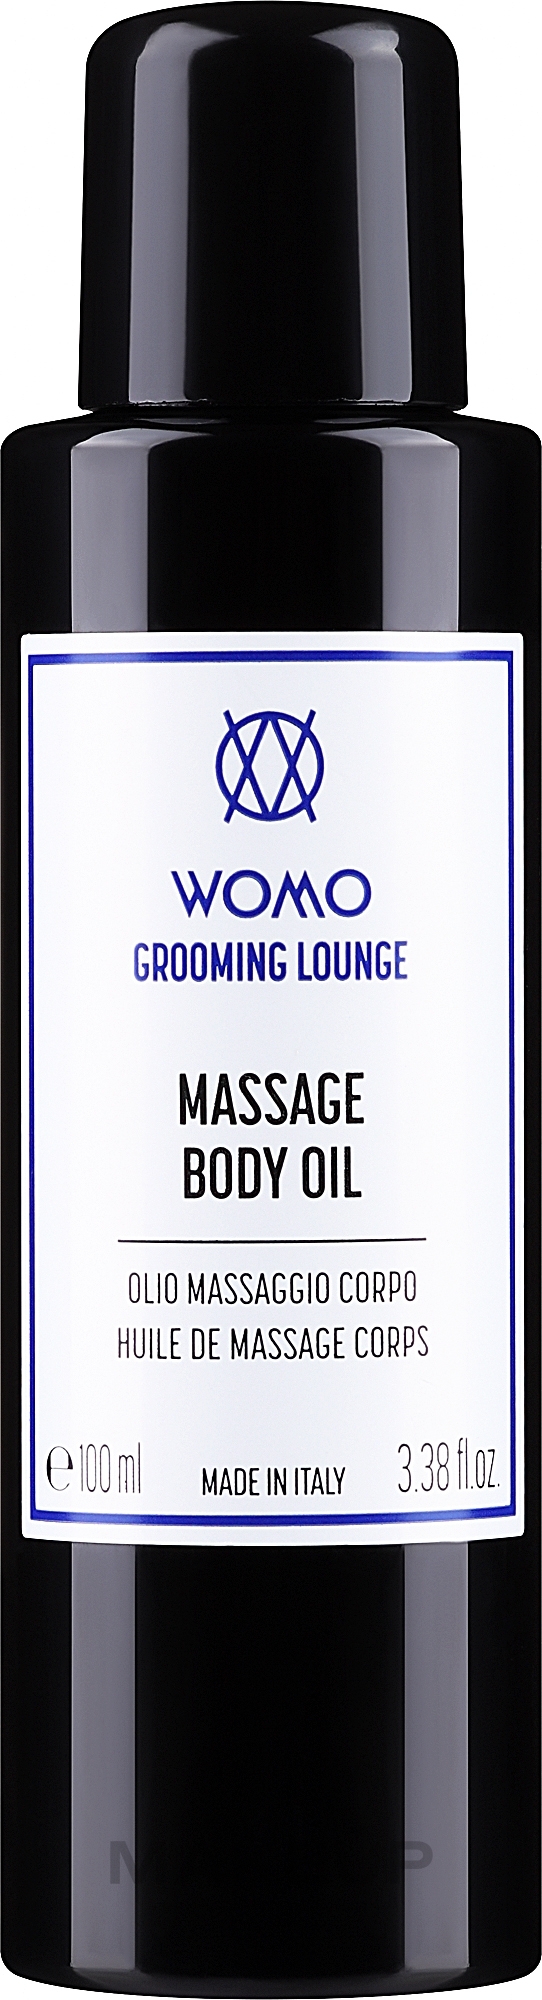 Масажна олія для тіла - Womo Grooming Lounge Massage Body Oil — фото 100ml